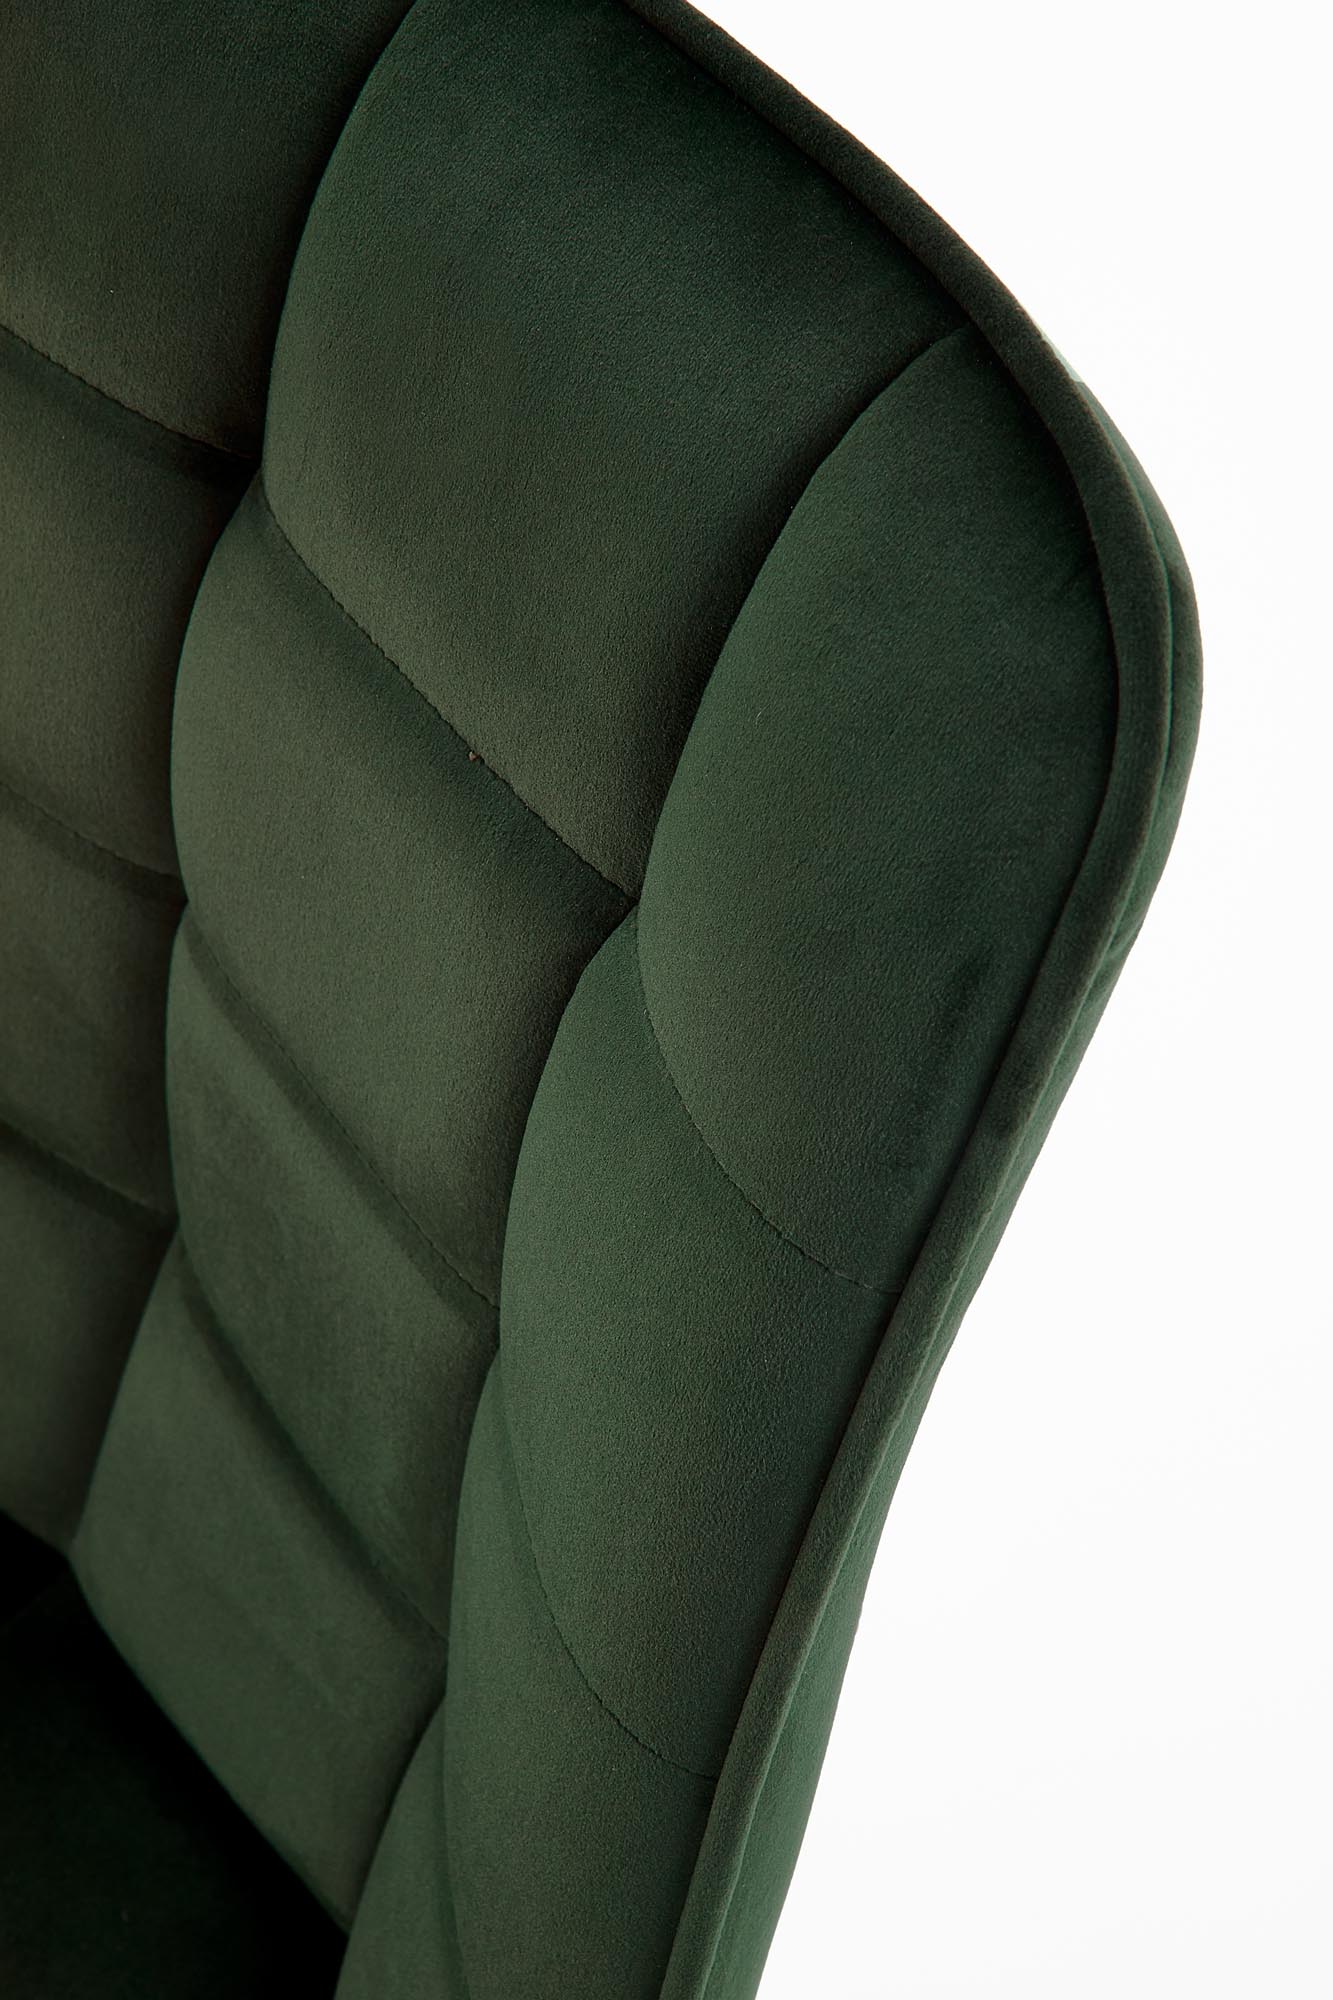 Krzesło tapicerowane K332 na metalowych nogach - ciemny zielony / czarne nogi krzesło tapicerowane k332 - ciemny zielony